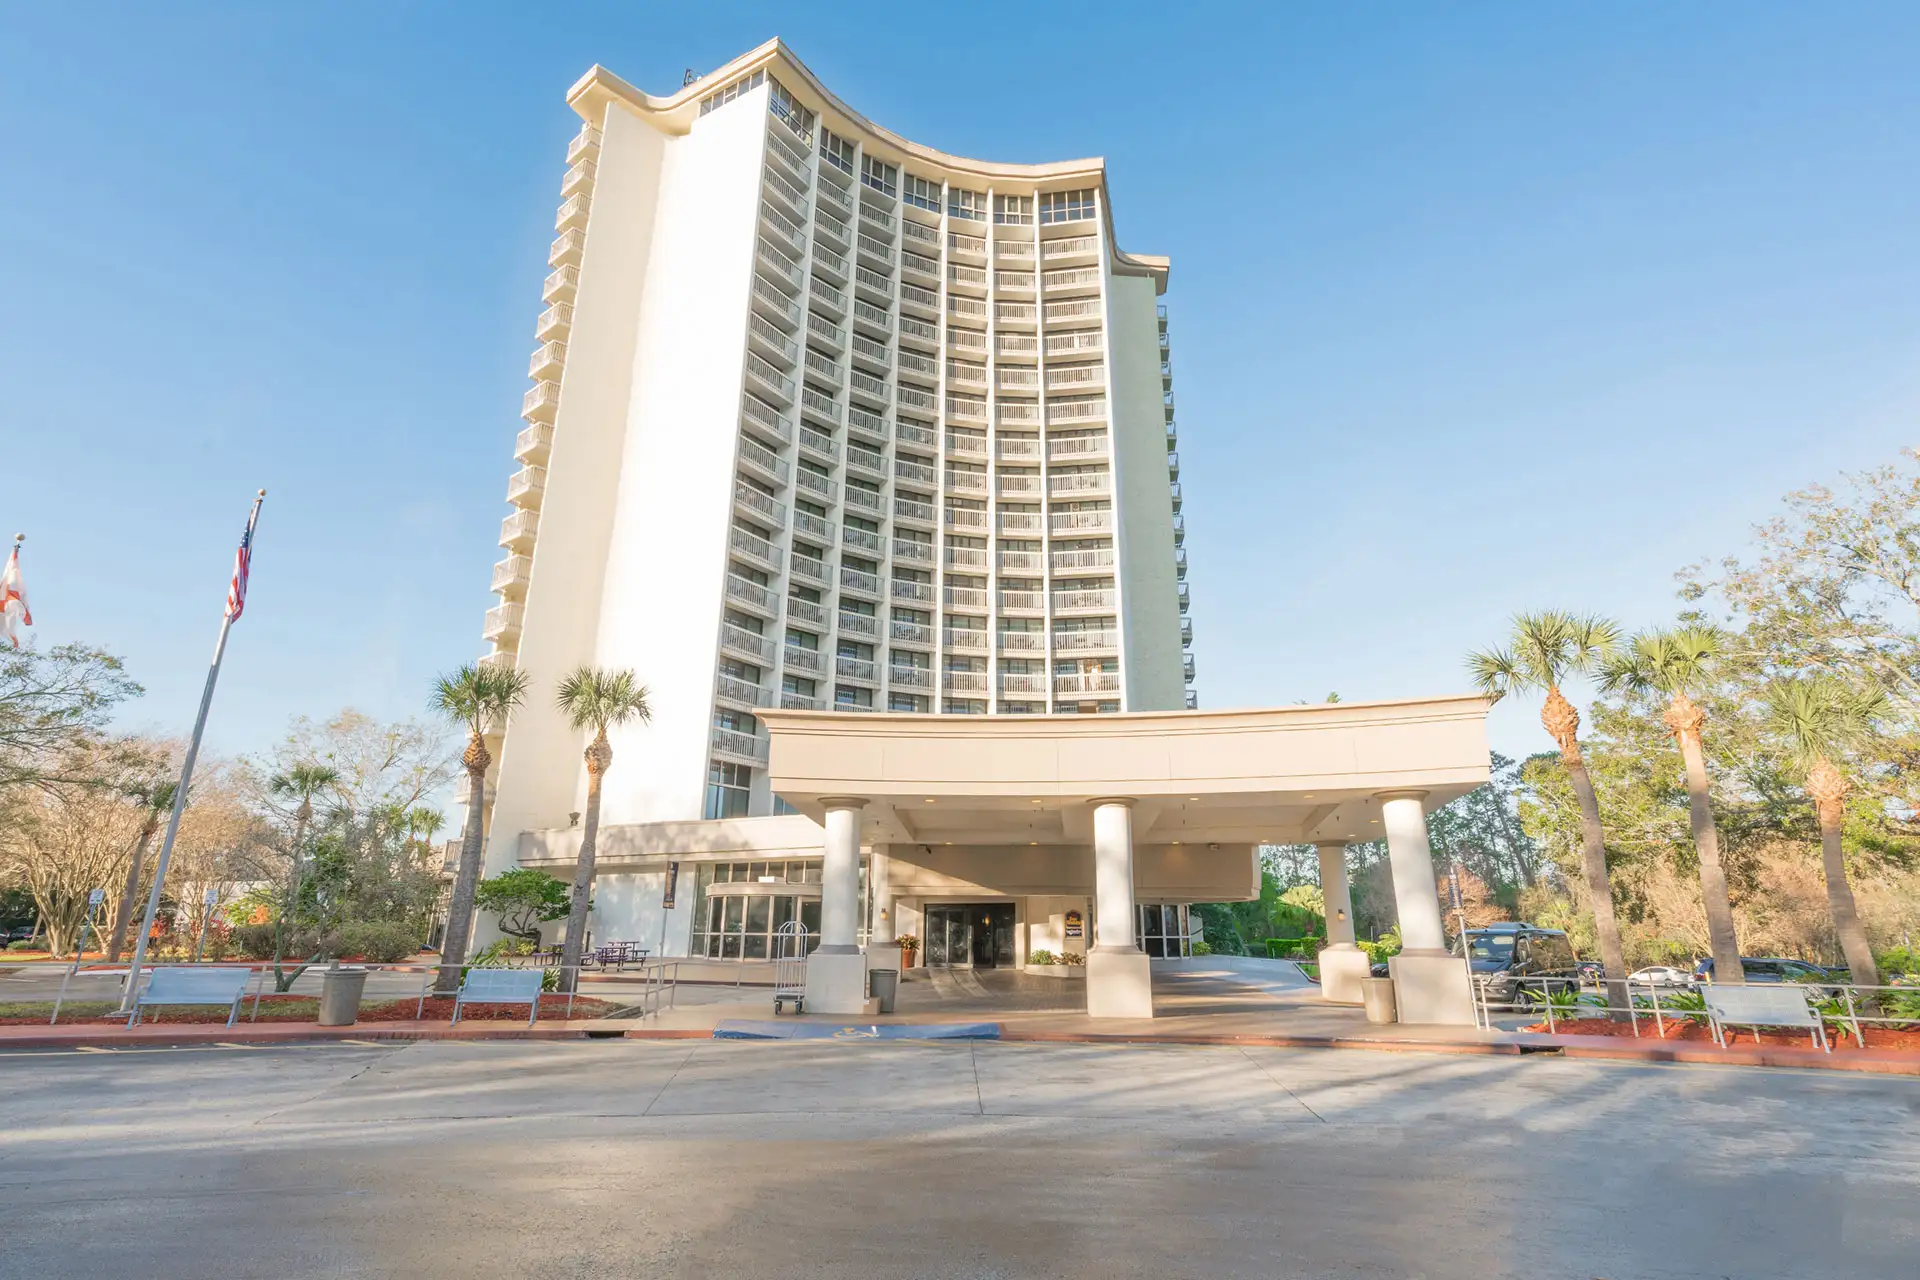 BEST WESTERN Lake Buena Vista Resort Hotel; Courtesy of BEST WESTERN Lake Buena Vista Resort Hotel